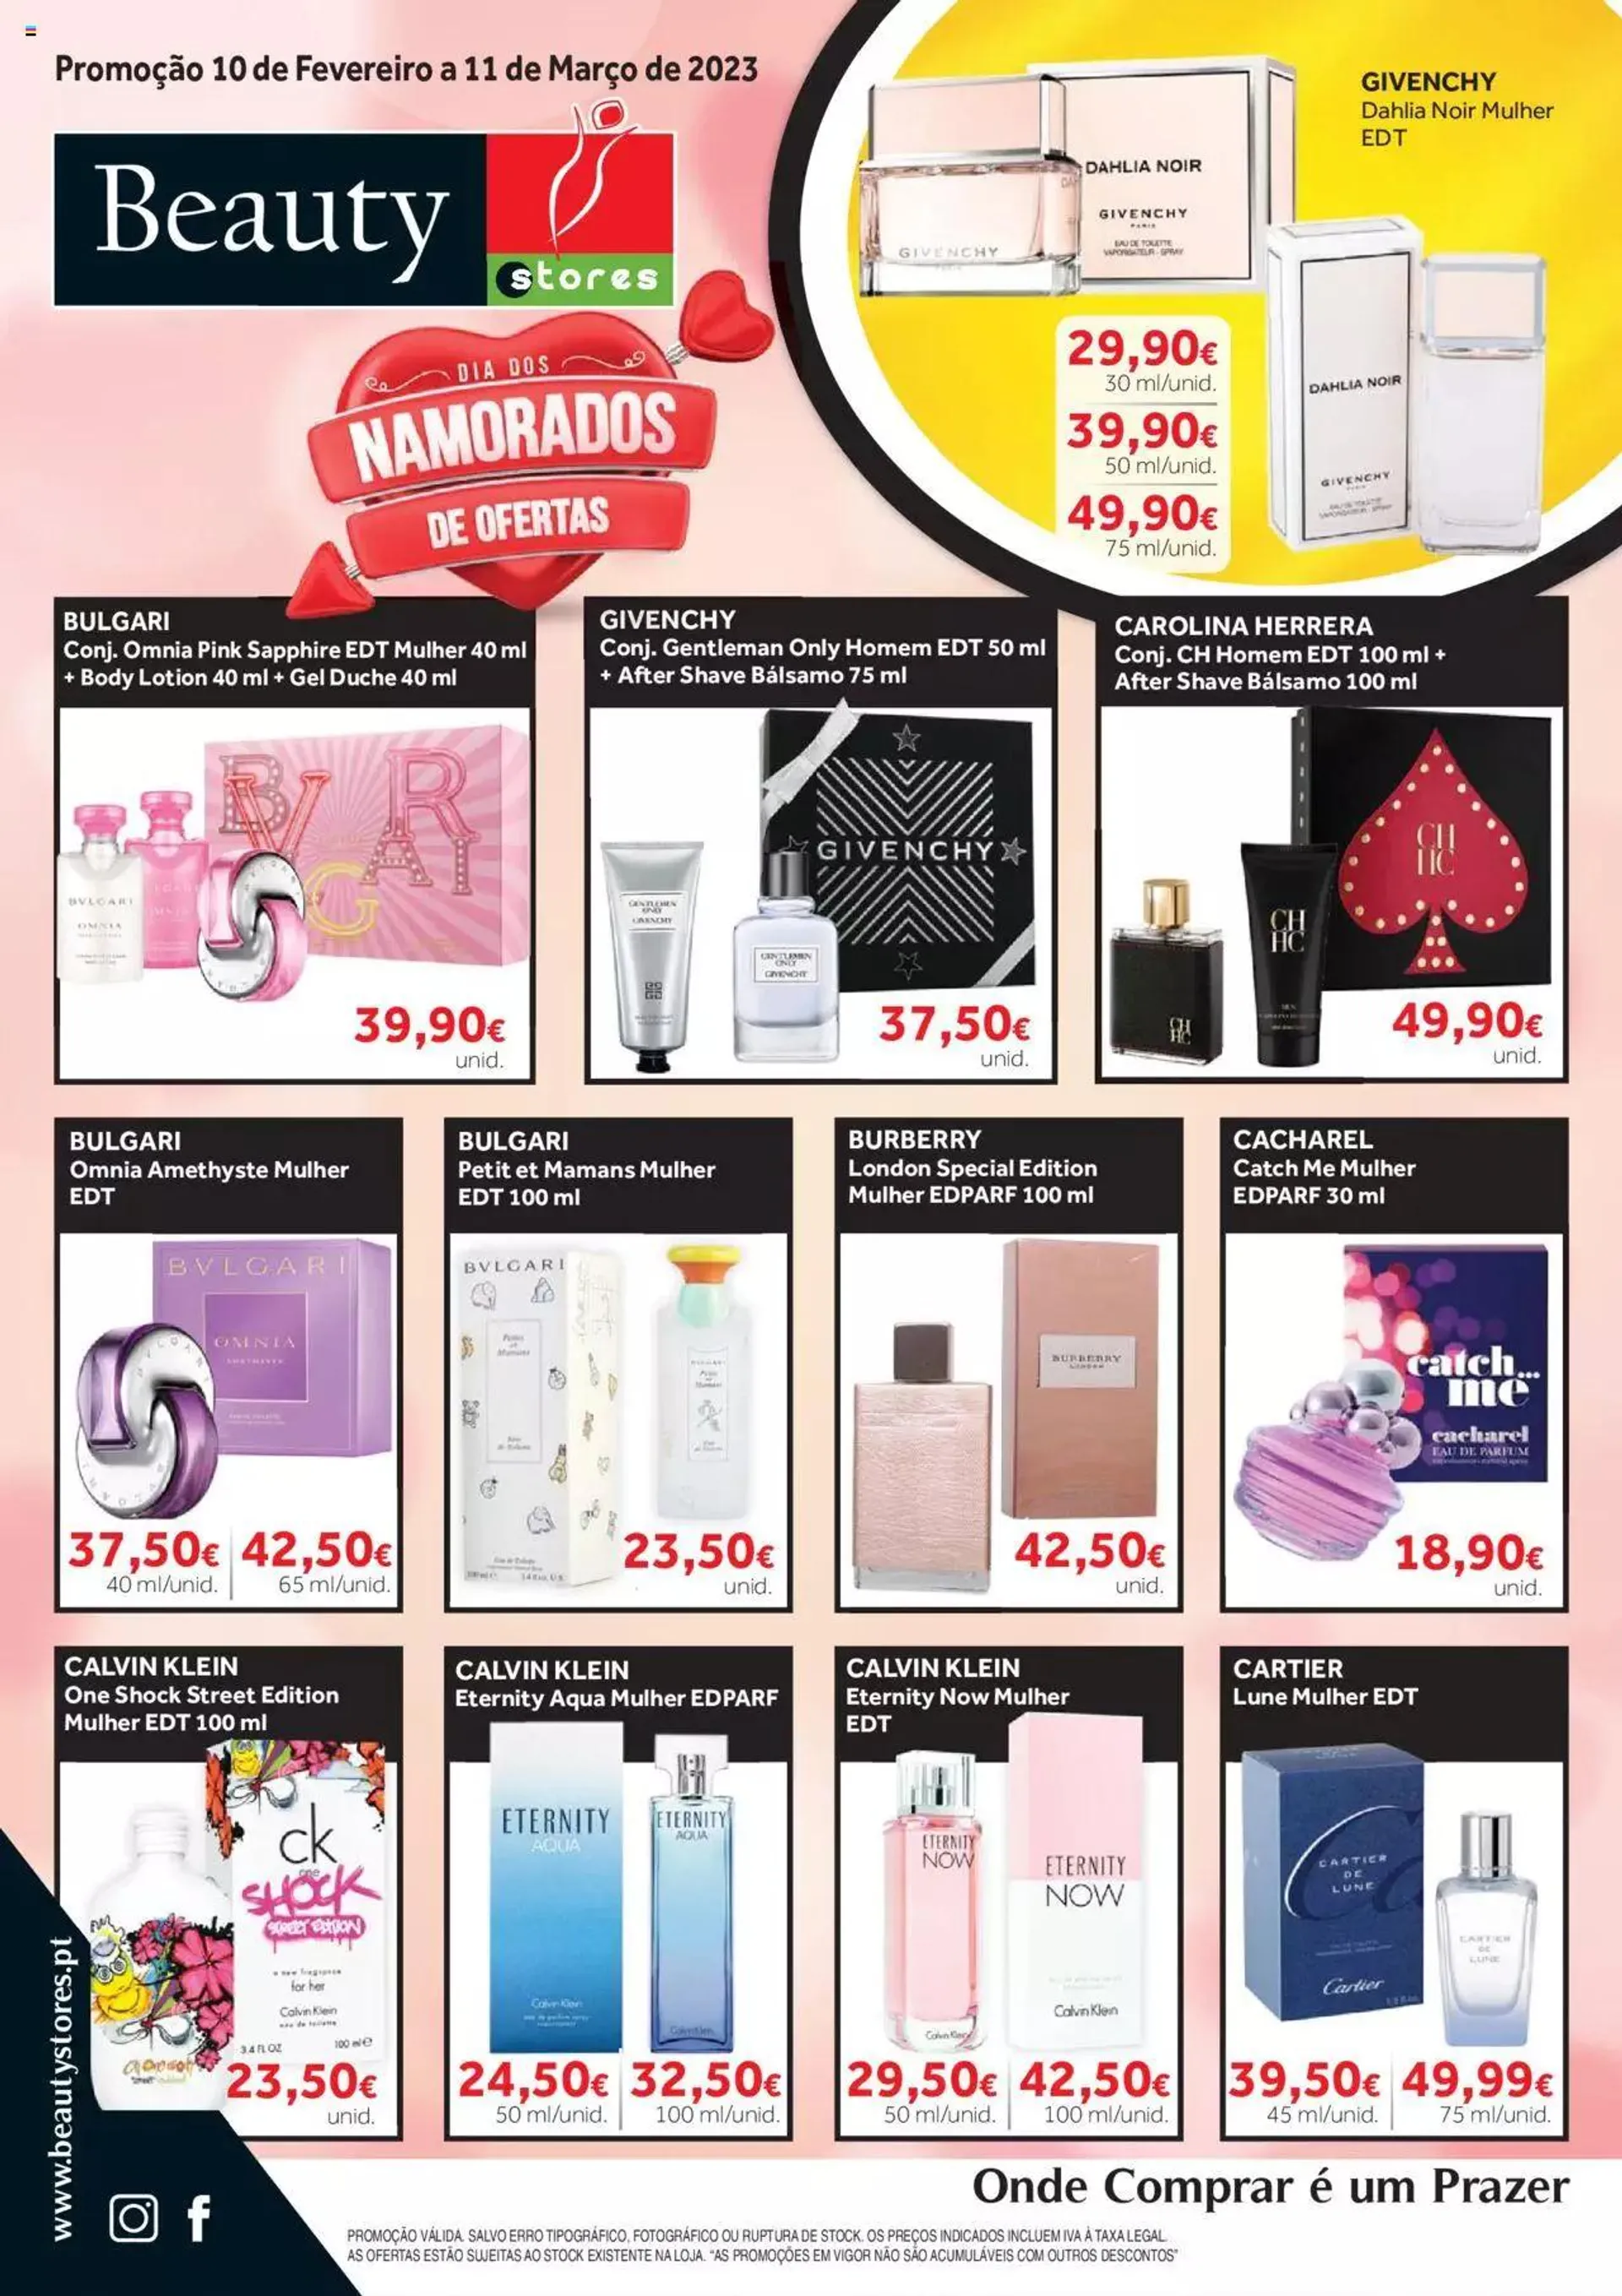 Beauty Stores Promoções Alta Perfumaria - 0